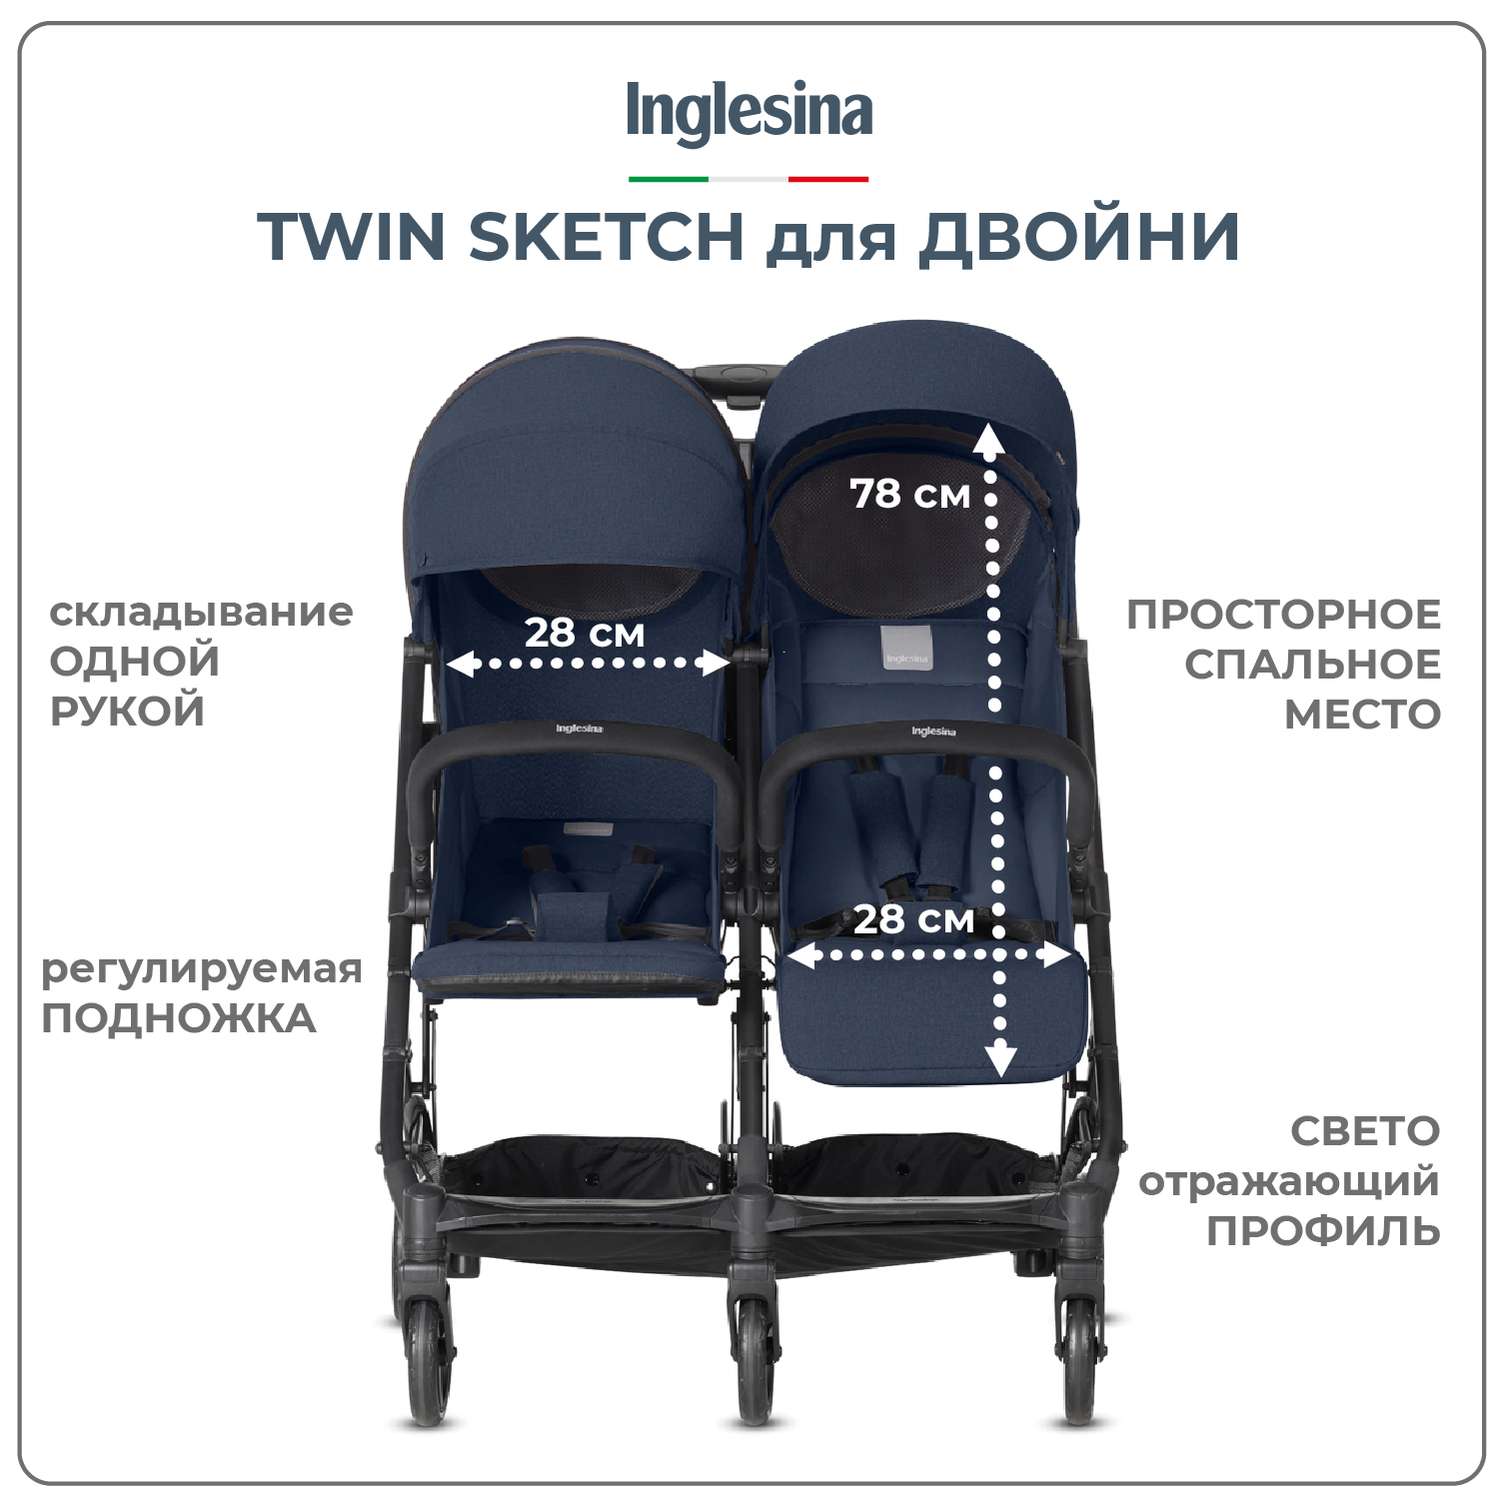 Inglesina Twin Sketch